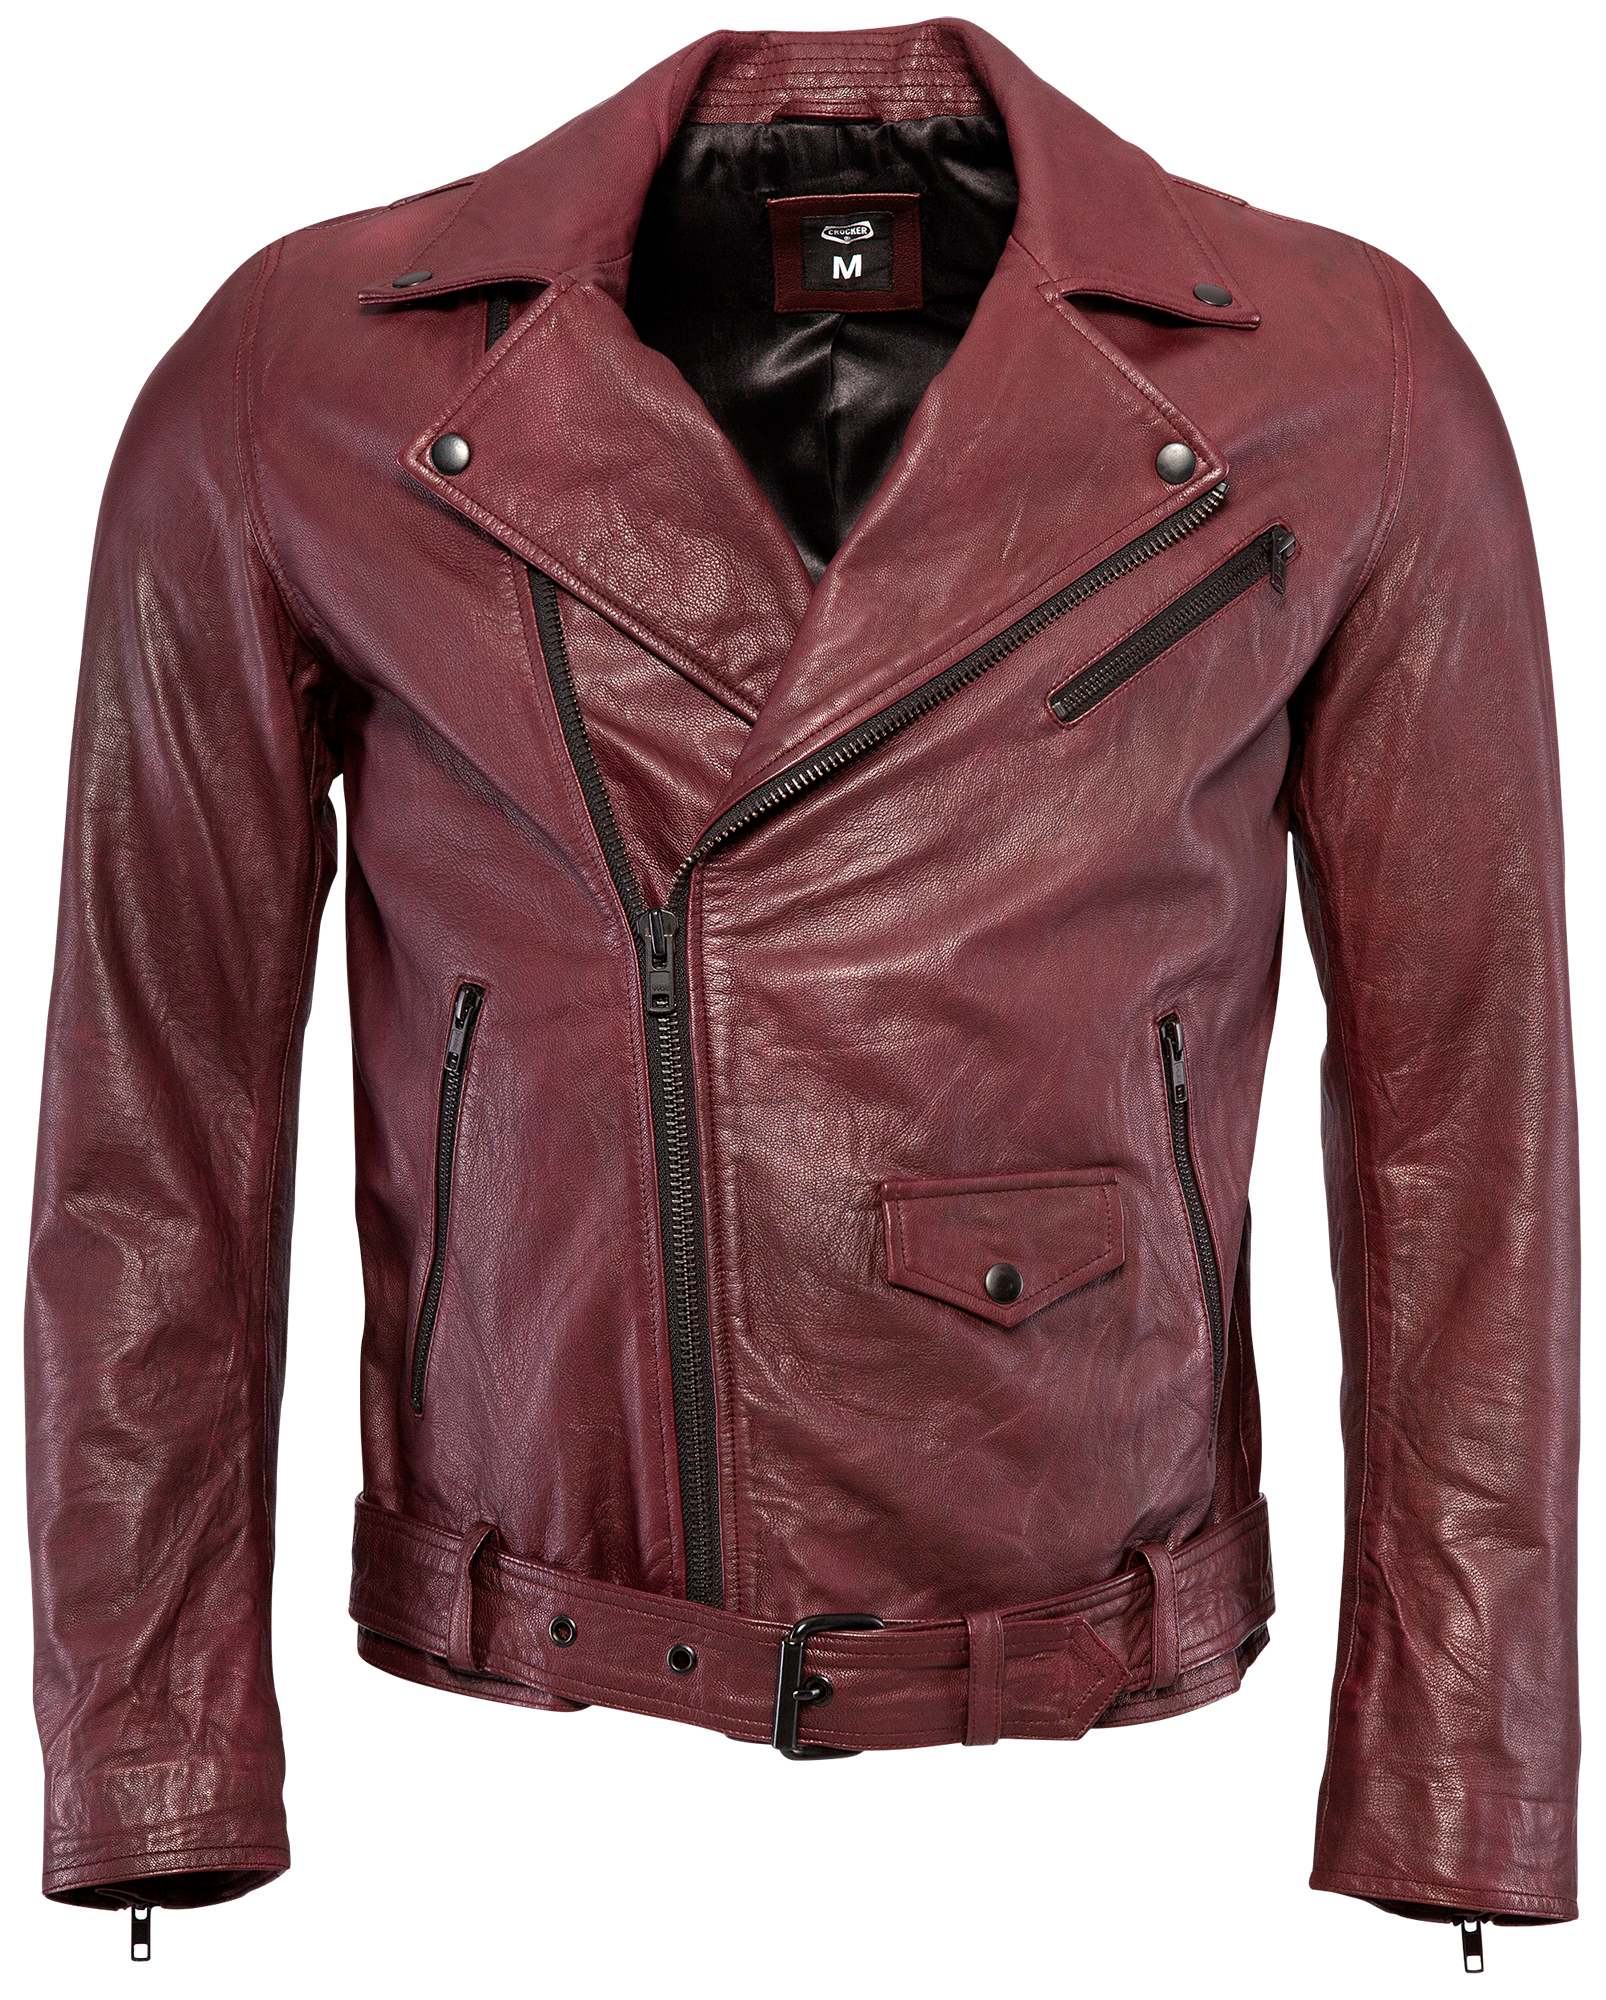 jacket clipart jaket